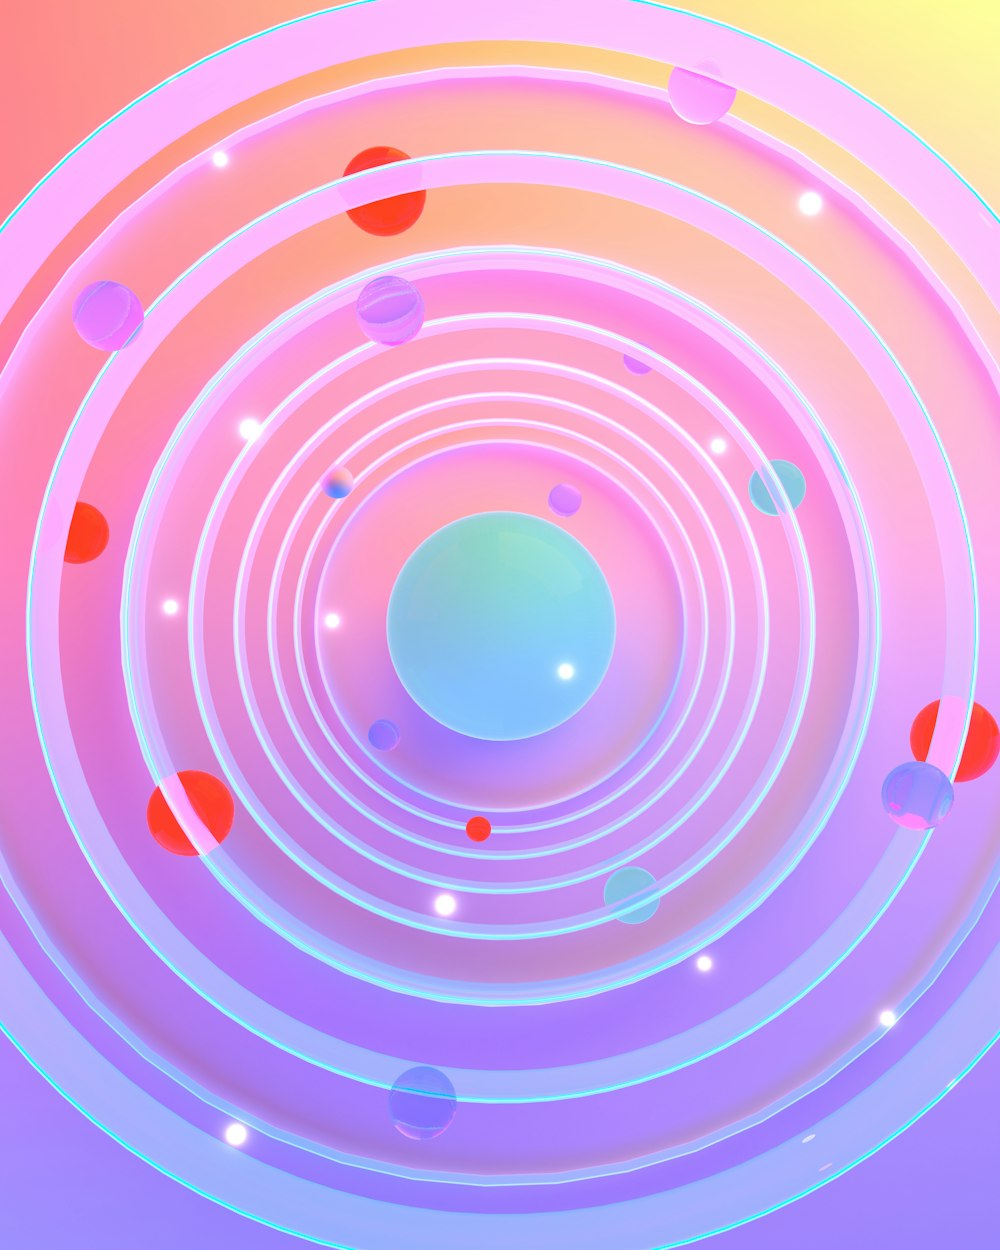 Una foto abstracta de un objeto circular con un centro azul